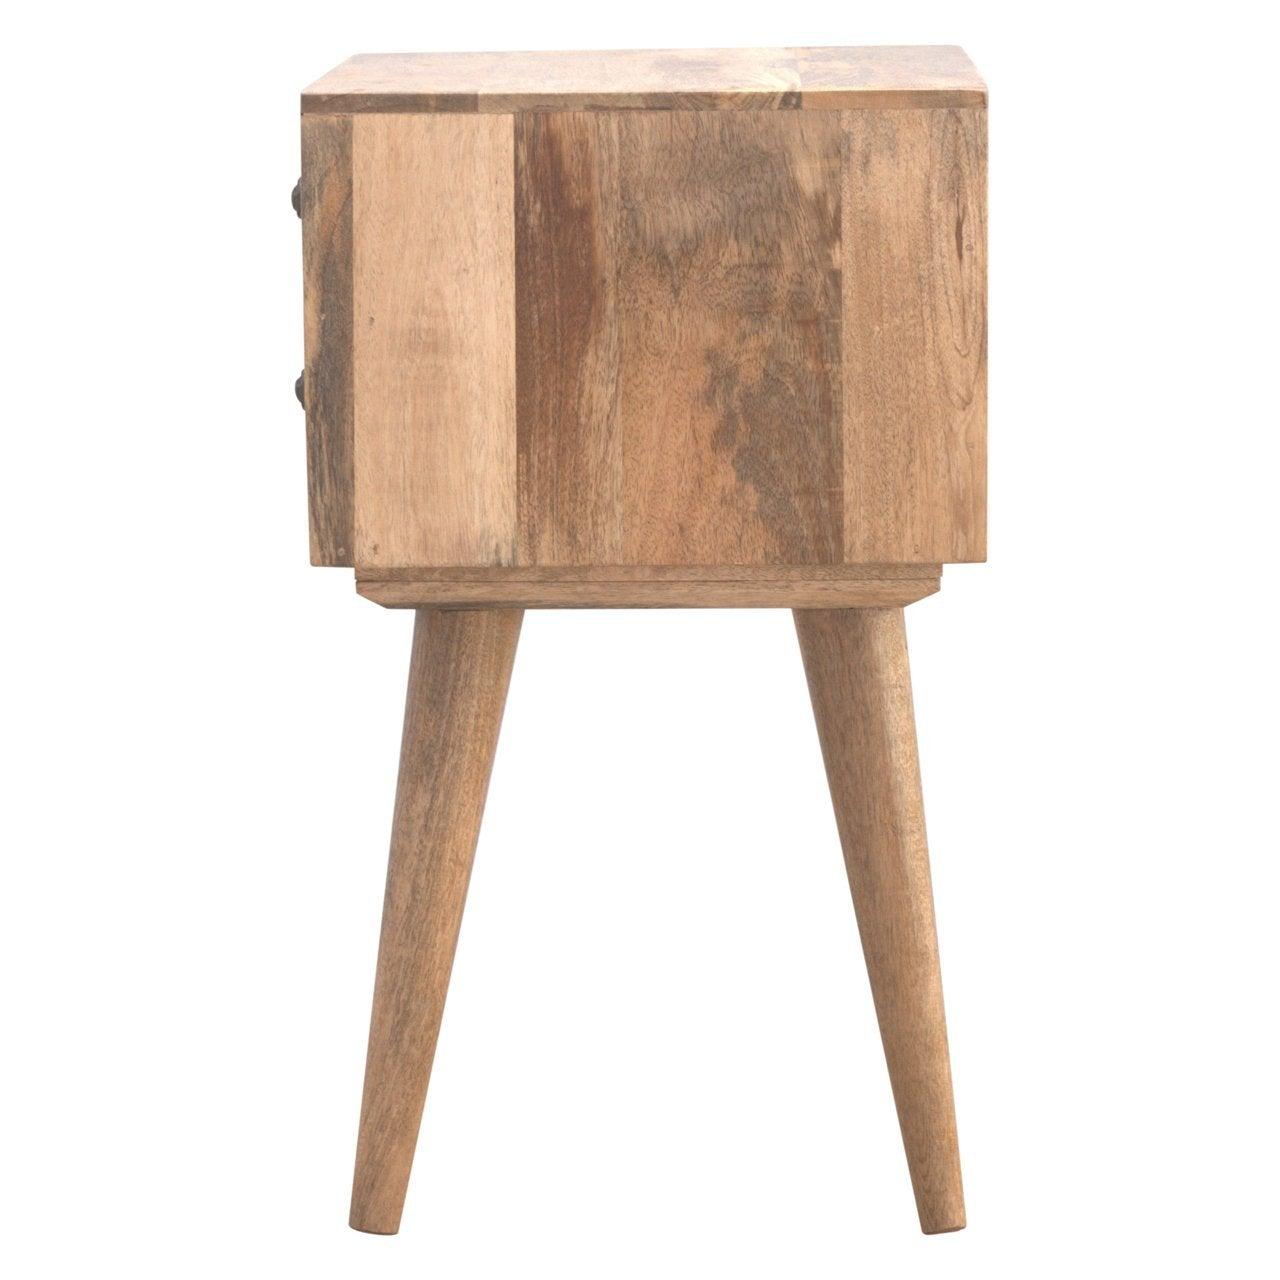 Modern solid wood bedside table - crimblefest furniture - image 9